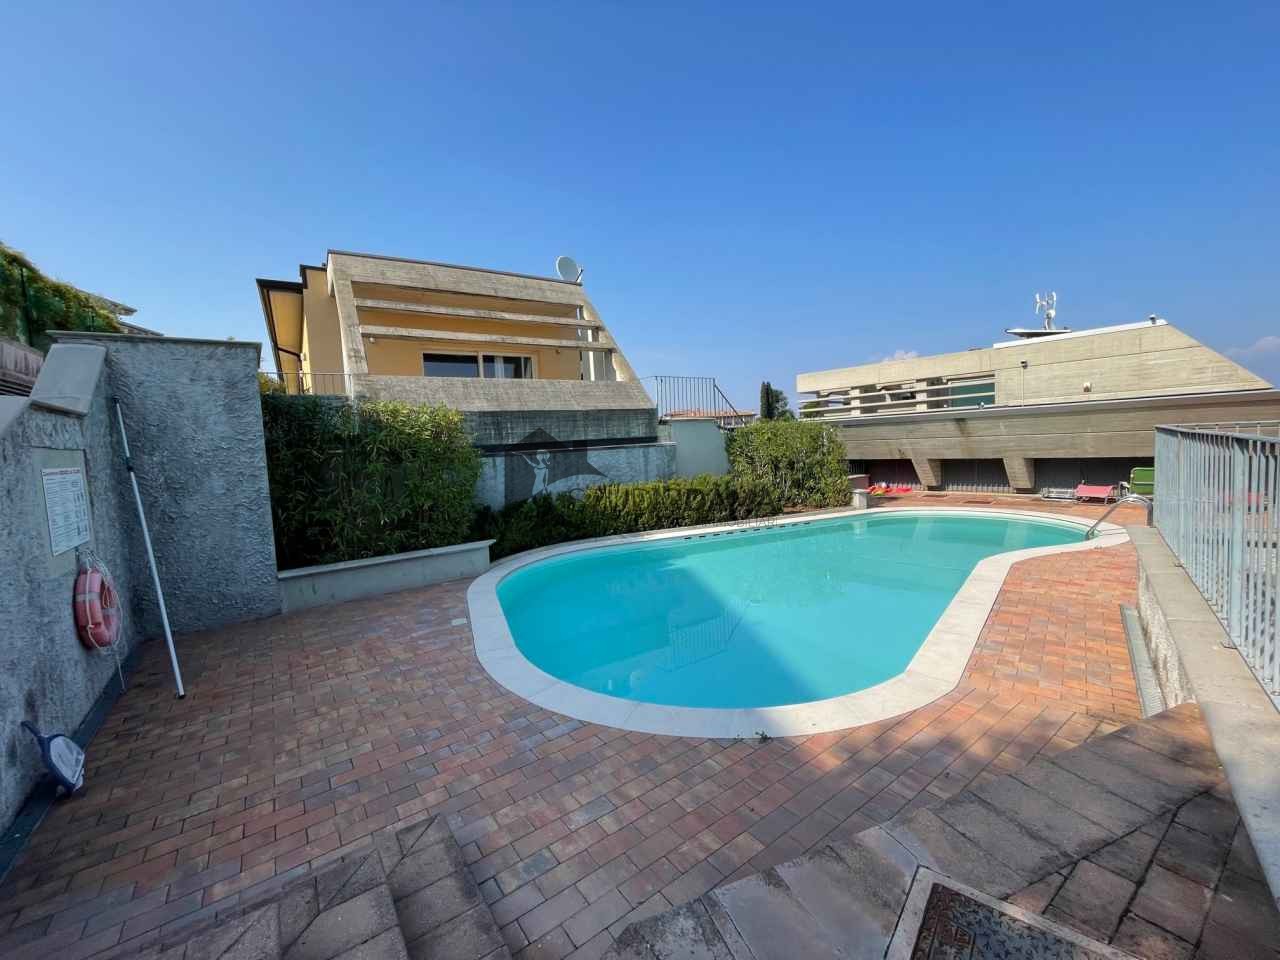 Villa Bifamiliare in vendita a Polpenazze del Garda, 4 locali, prezzo € 330.000 | PortaleAgenzieImmobiliari.it